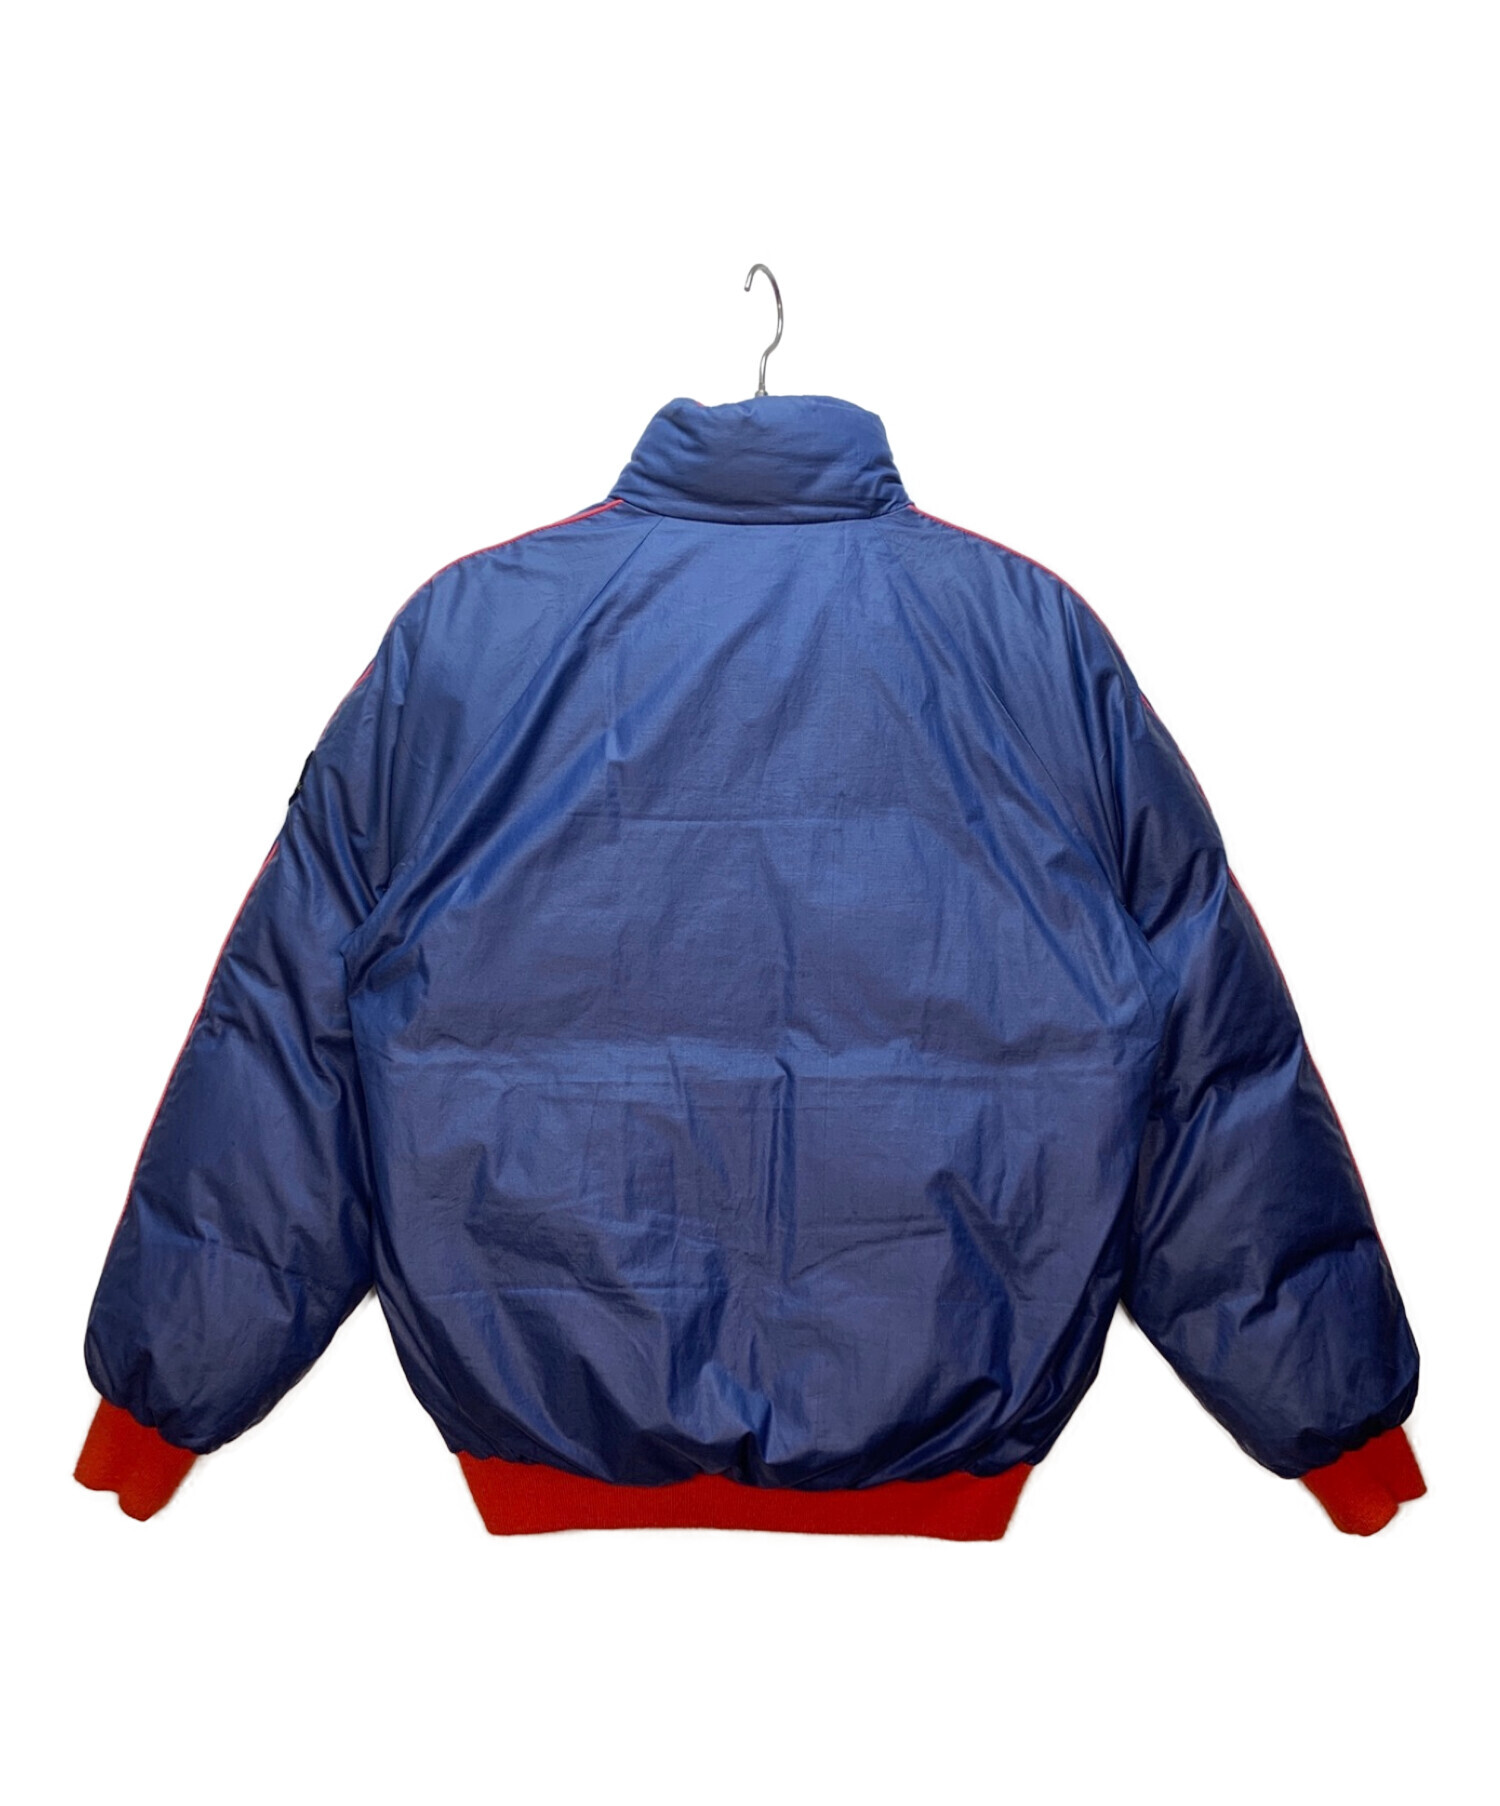 MONCLER (モンクレール) リバーシブルダウンジャケット ブルー×レッド サイズ:胸囲94 身長170